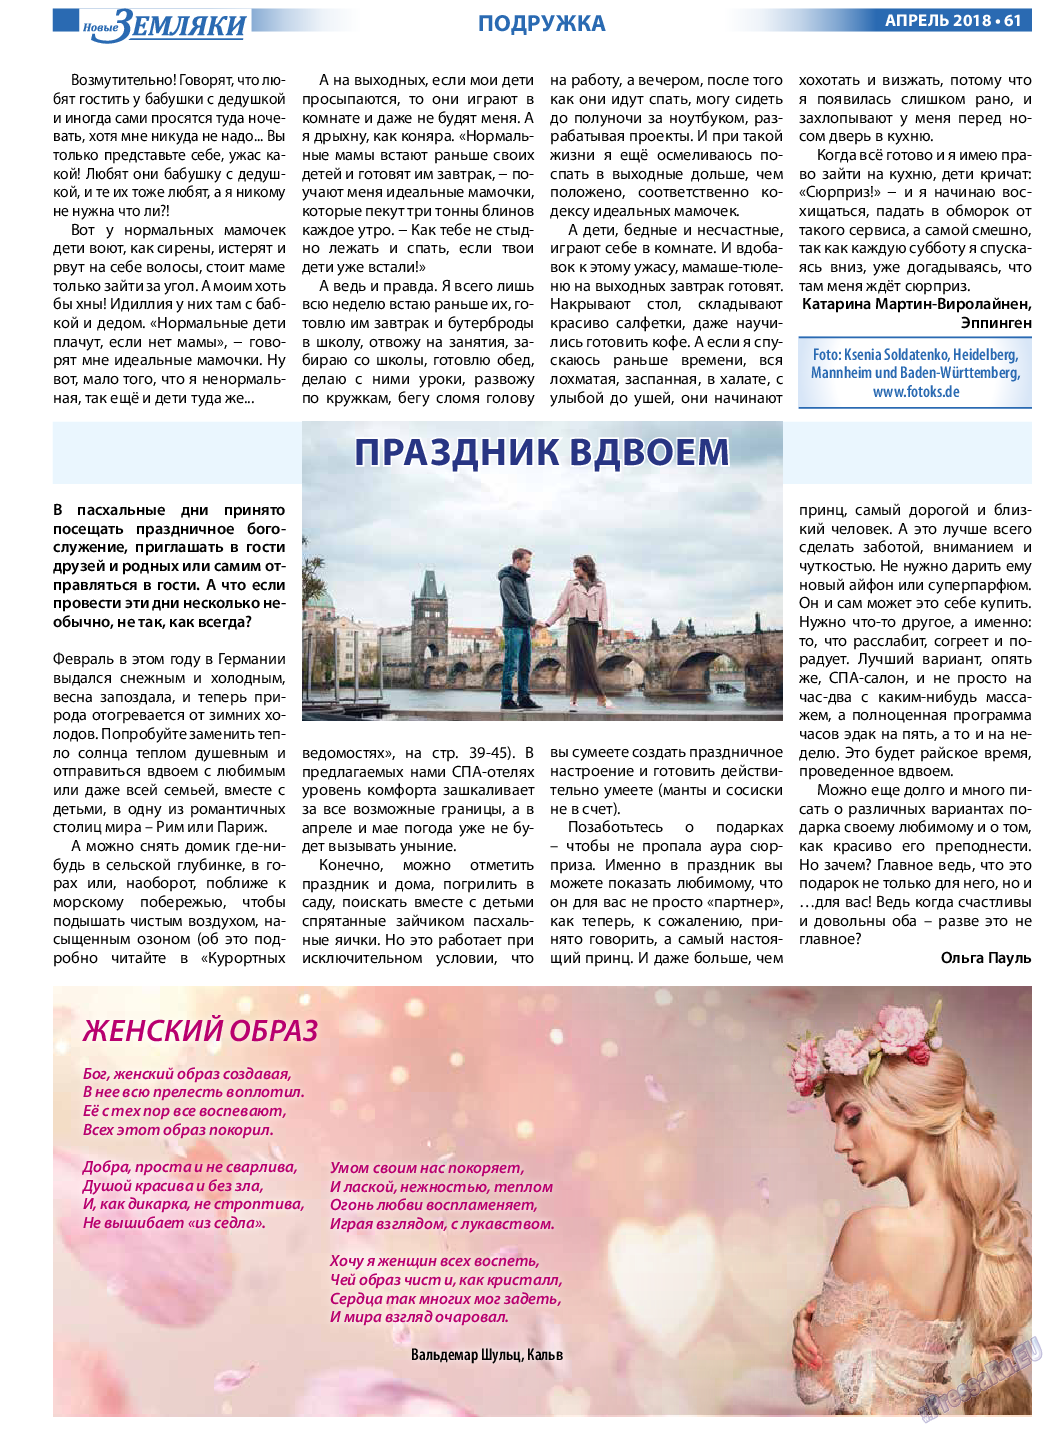 Новые Земляки, газета. 2018 №4 стр.61